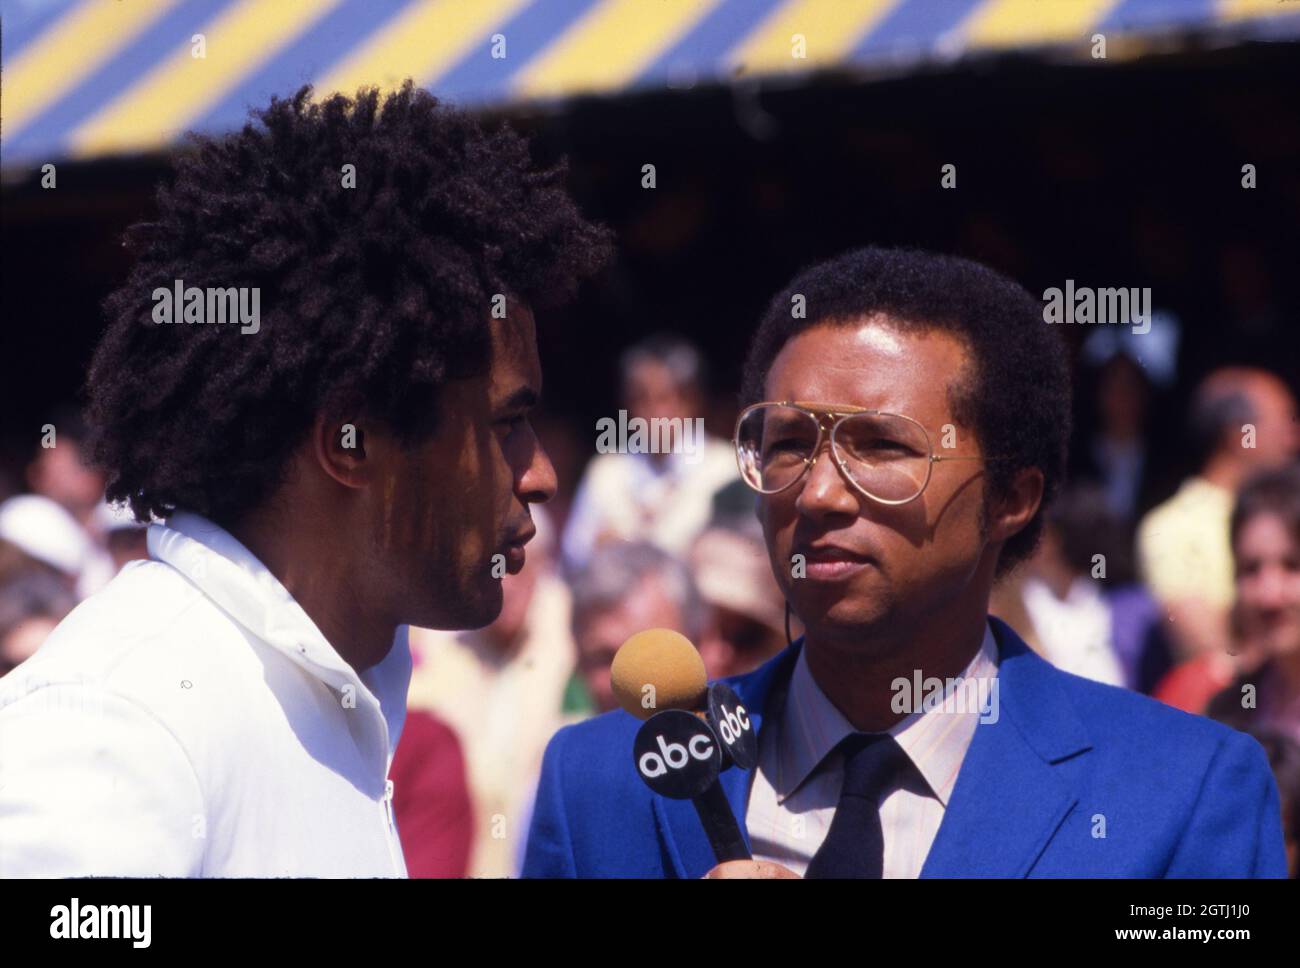 Arthur Ashe, alors en tant que correspondant d'ABC Sports, interviewer Yannick Noah lors d'un tournoi de tennis de championnat du monde à Forest Hills, New York en 1986 Banque D'Images